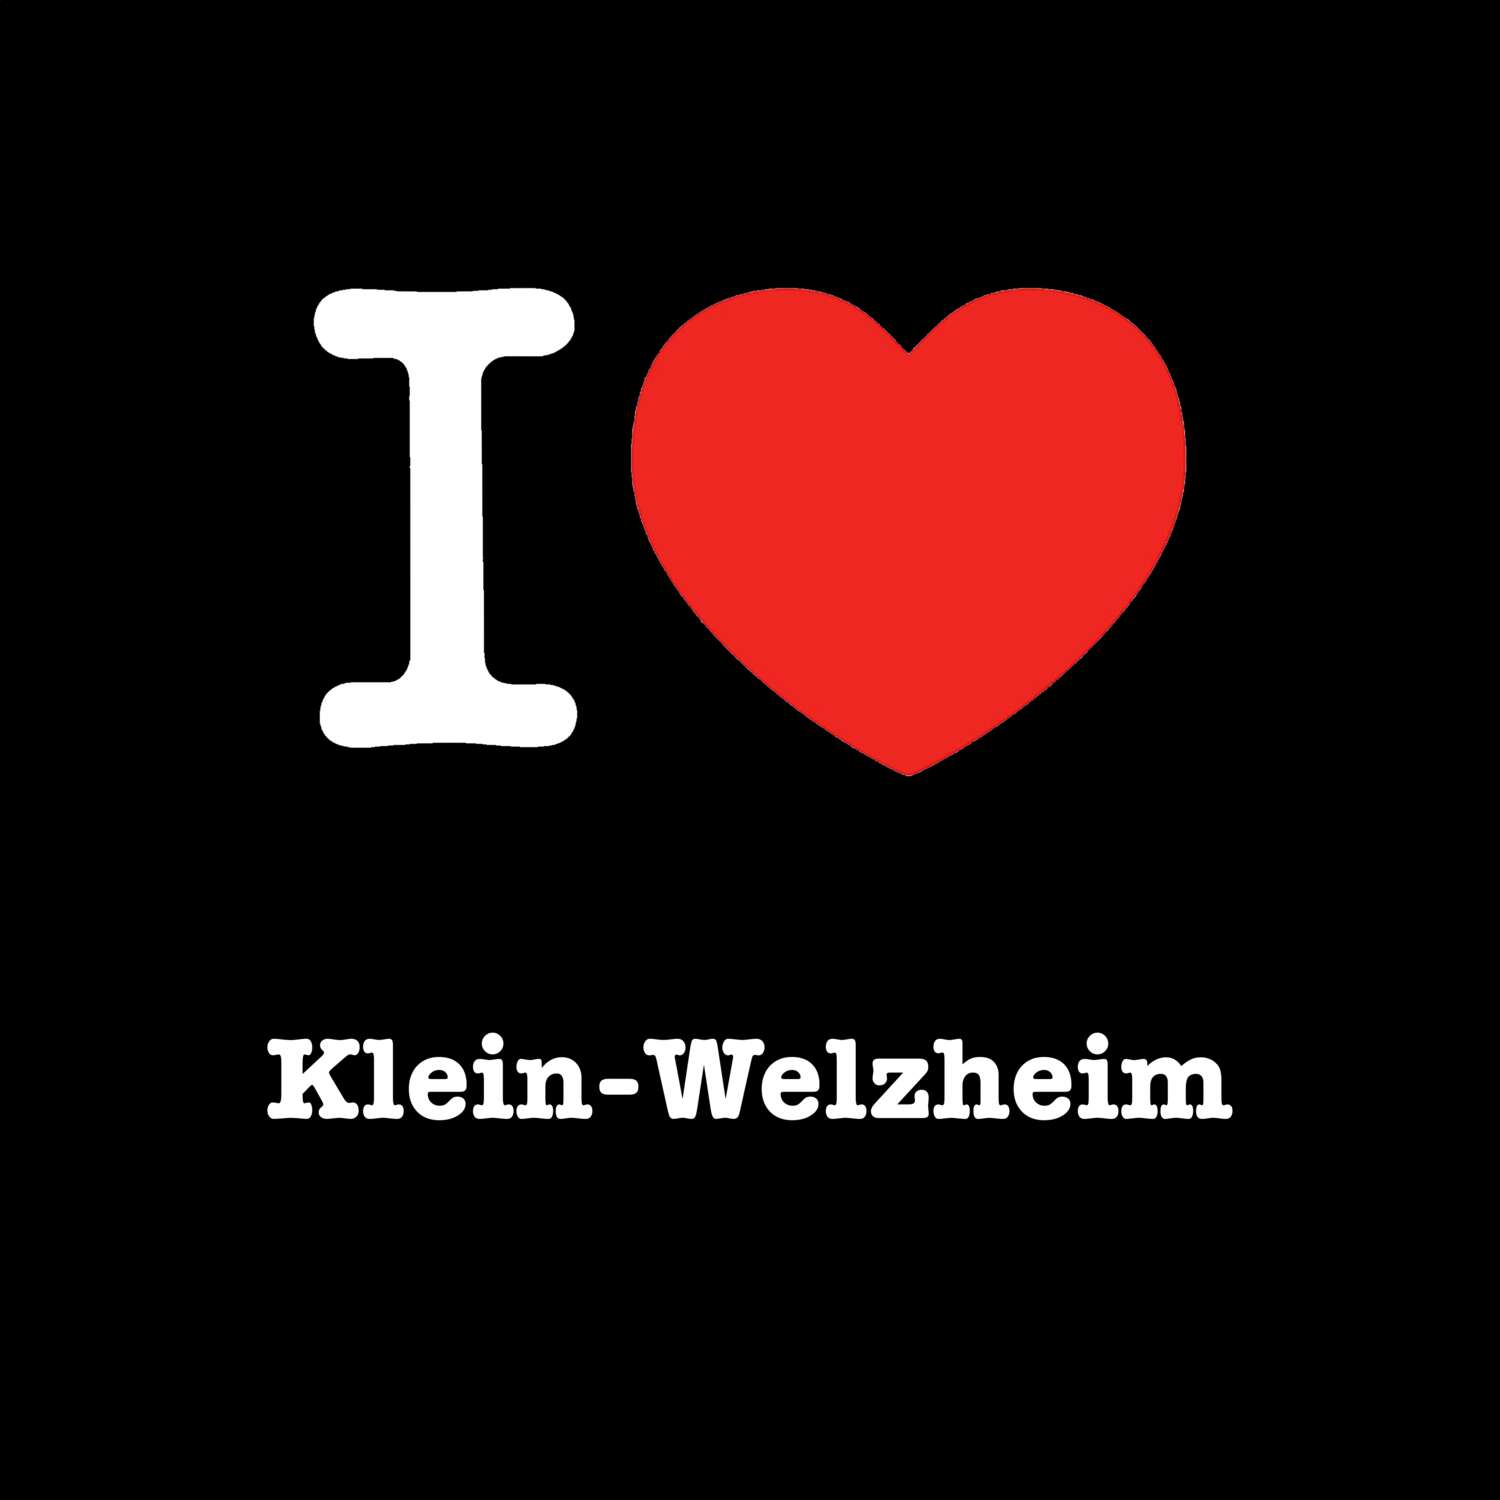 Klein-Welzheim T-Shirt »I love«